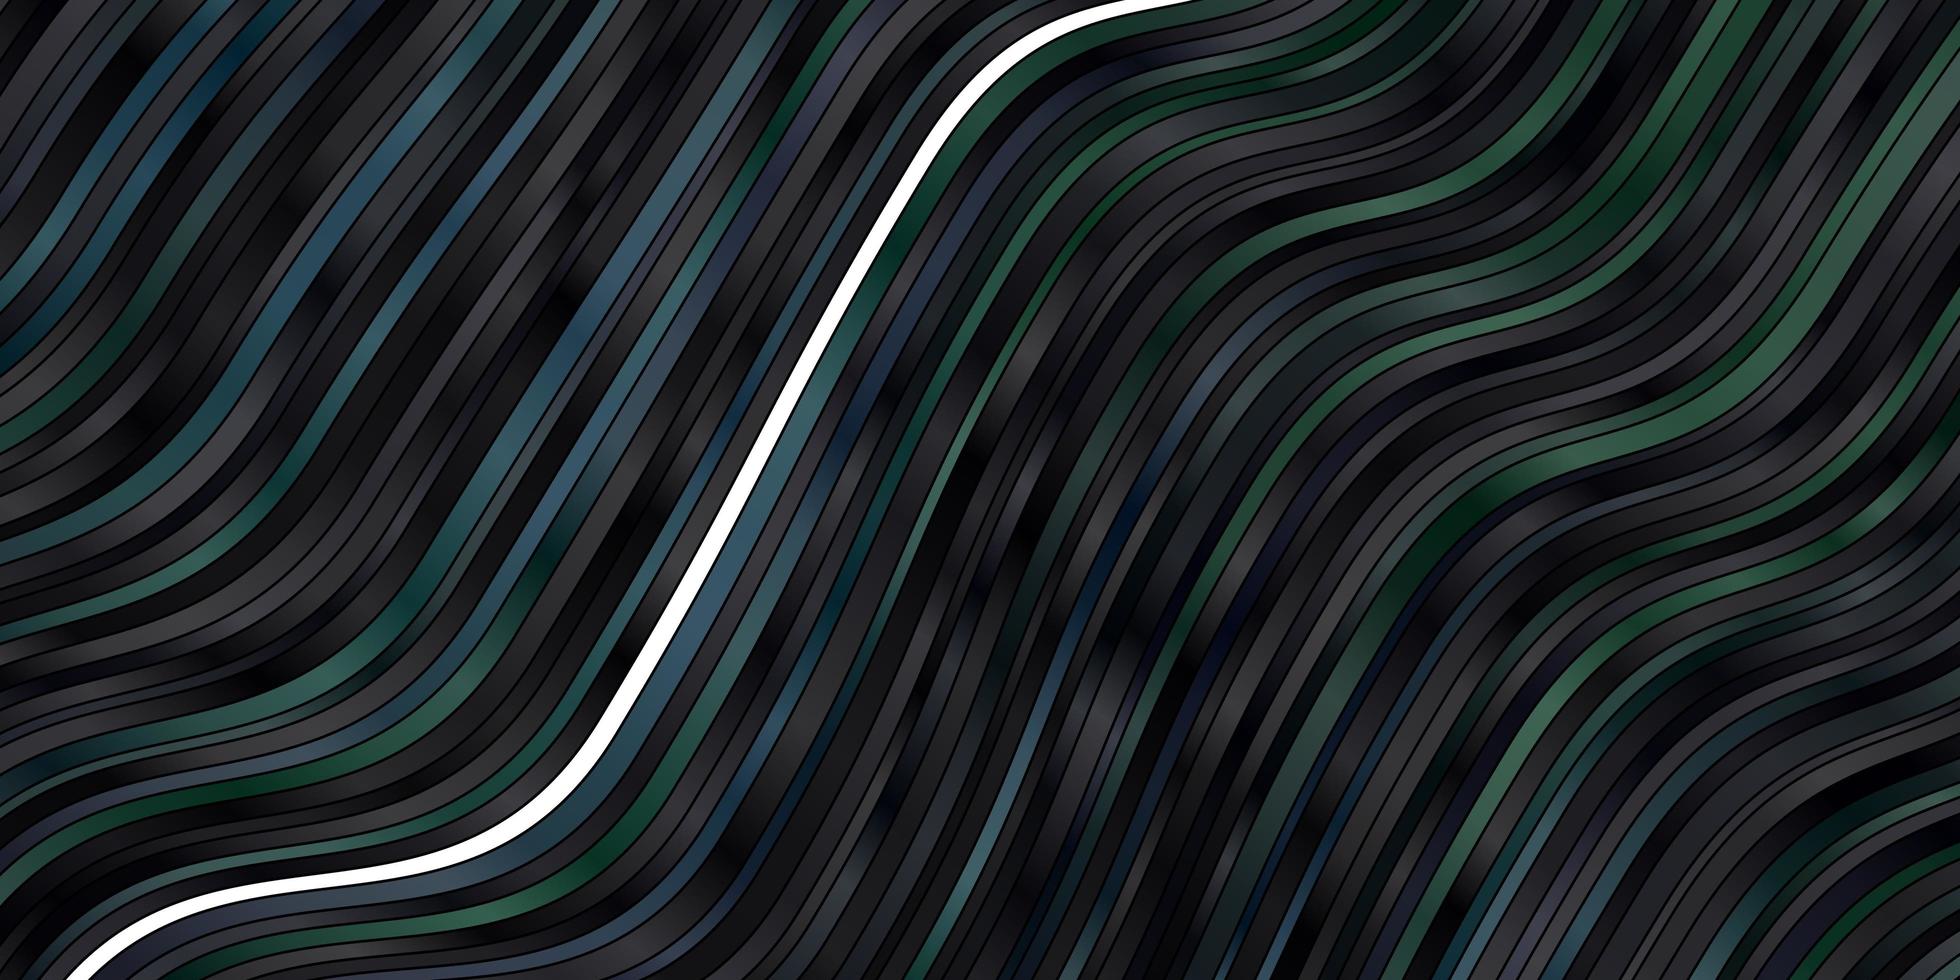 mörkblå, grön vektorbakgrund med kurvor. vektor